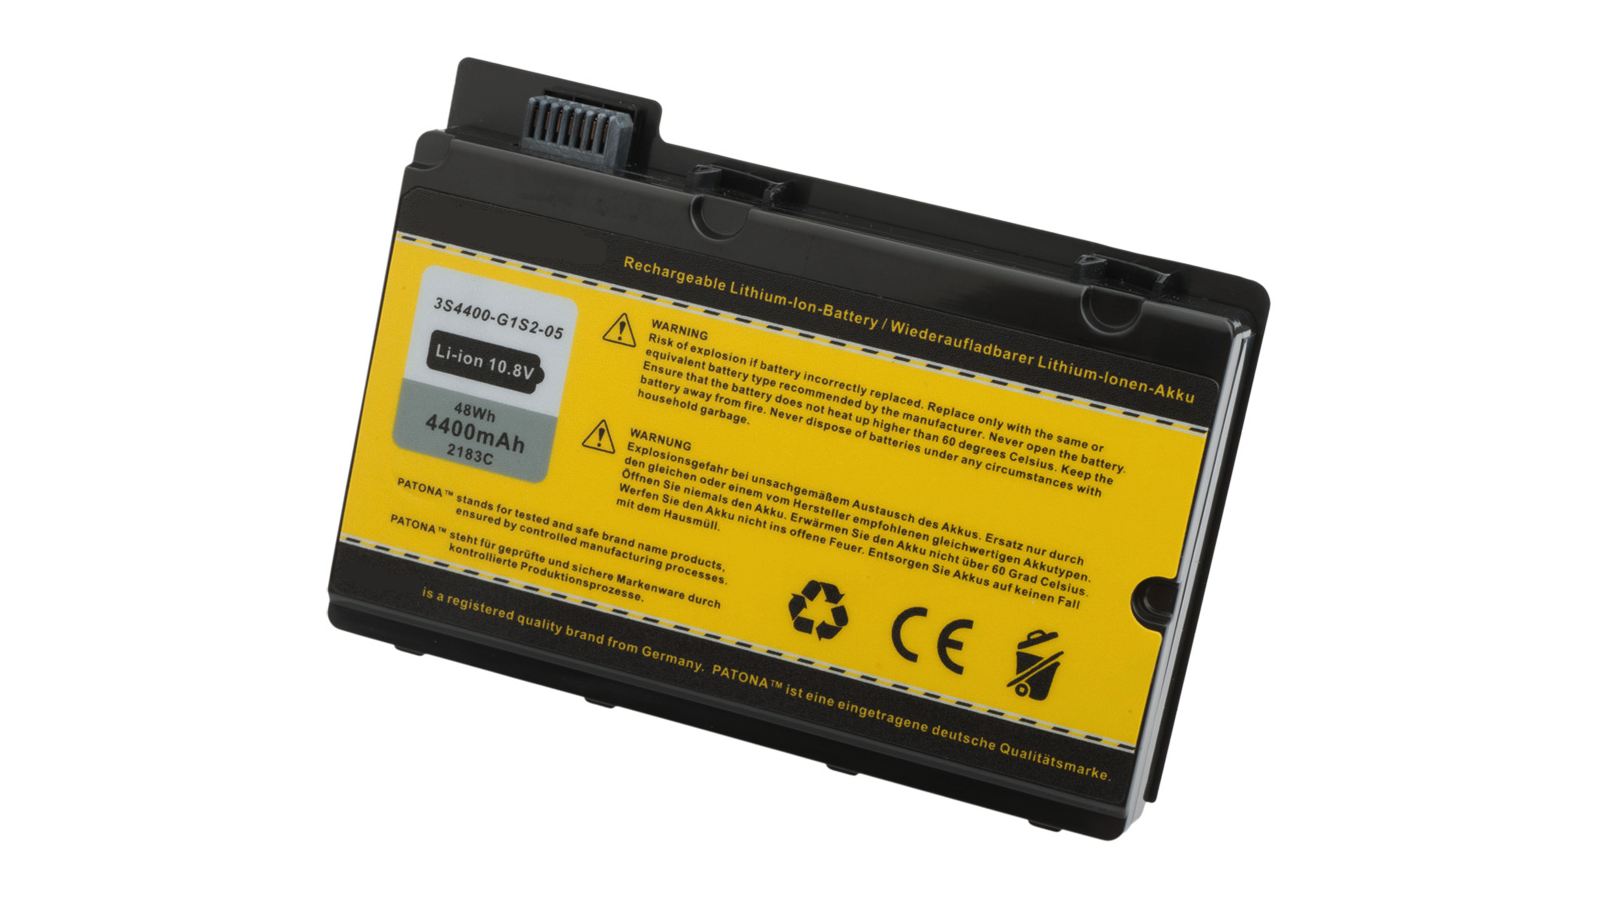 Batteria compatibile con Fujitsu 3S3600-S1A1-07 3S4400-C1S5-07 3S4400-C1S5-087 3S4400-G1L3-05 3S4400-G1S2-05